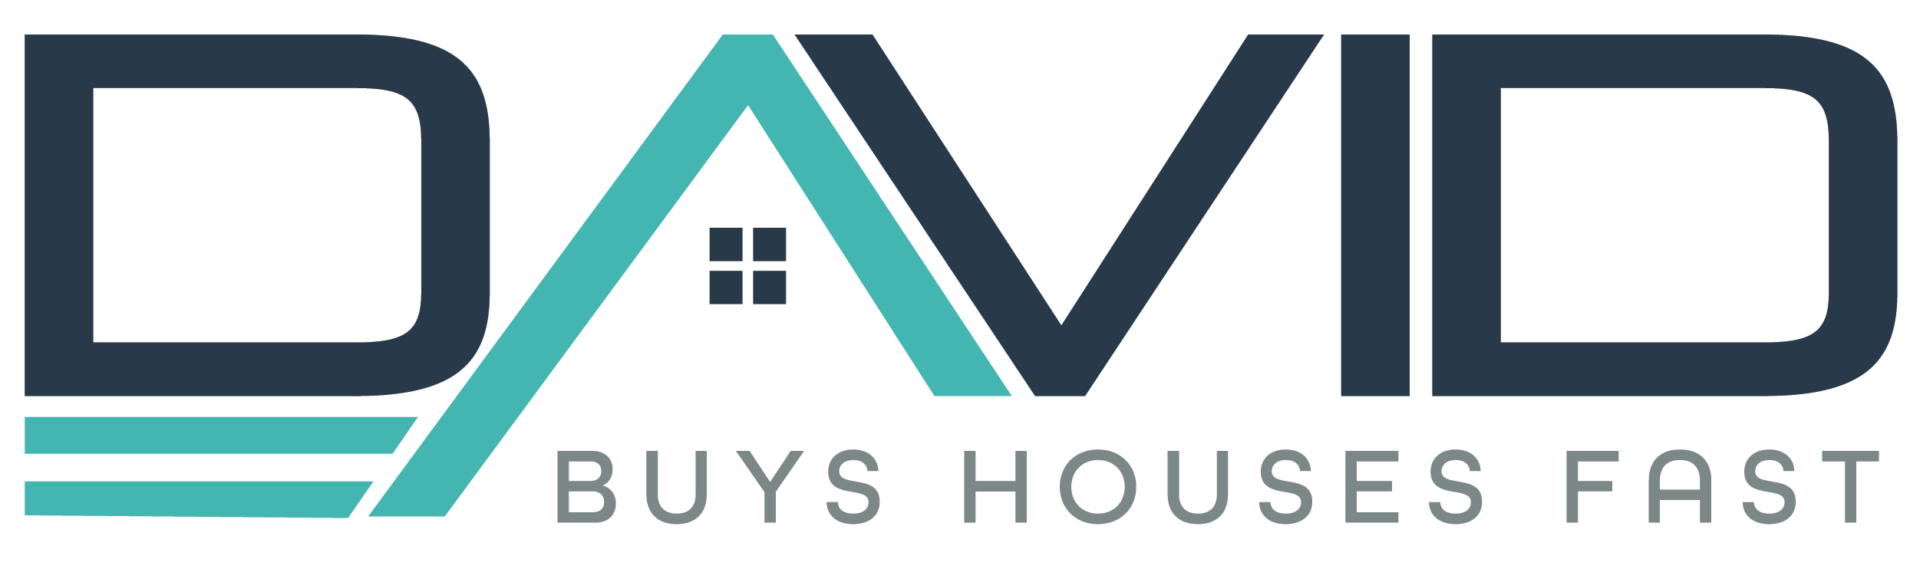 DavidBuysHousesFast.com logo